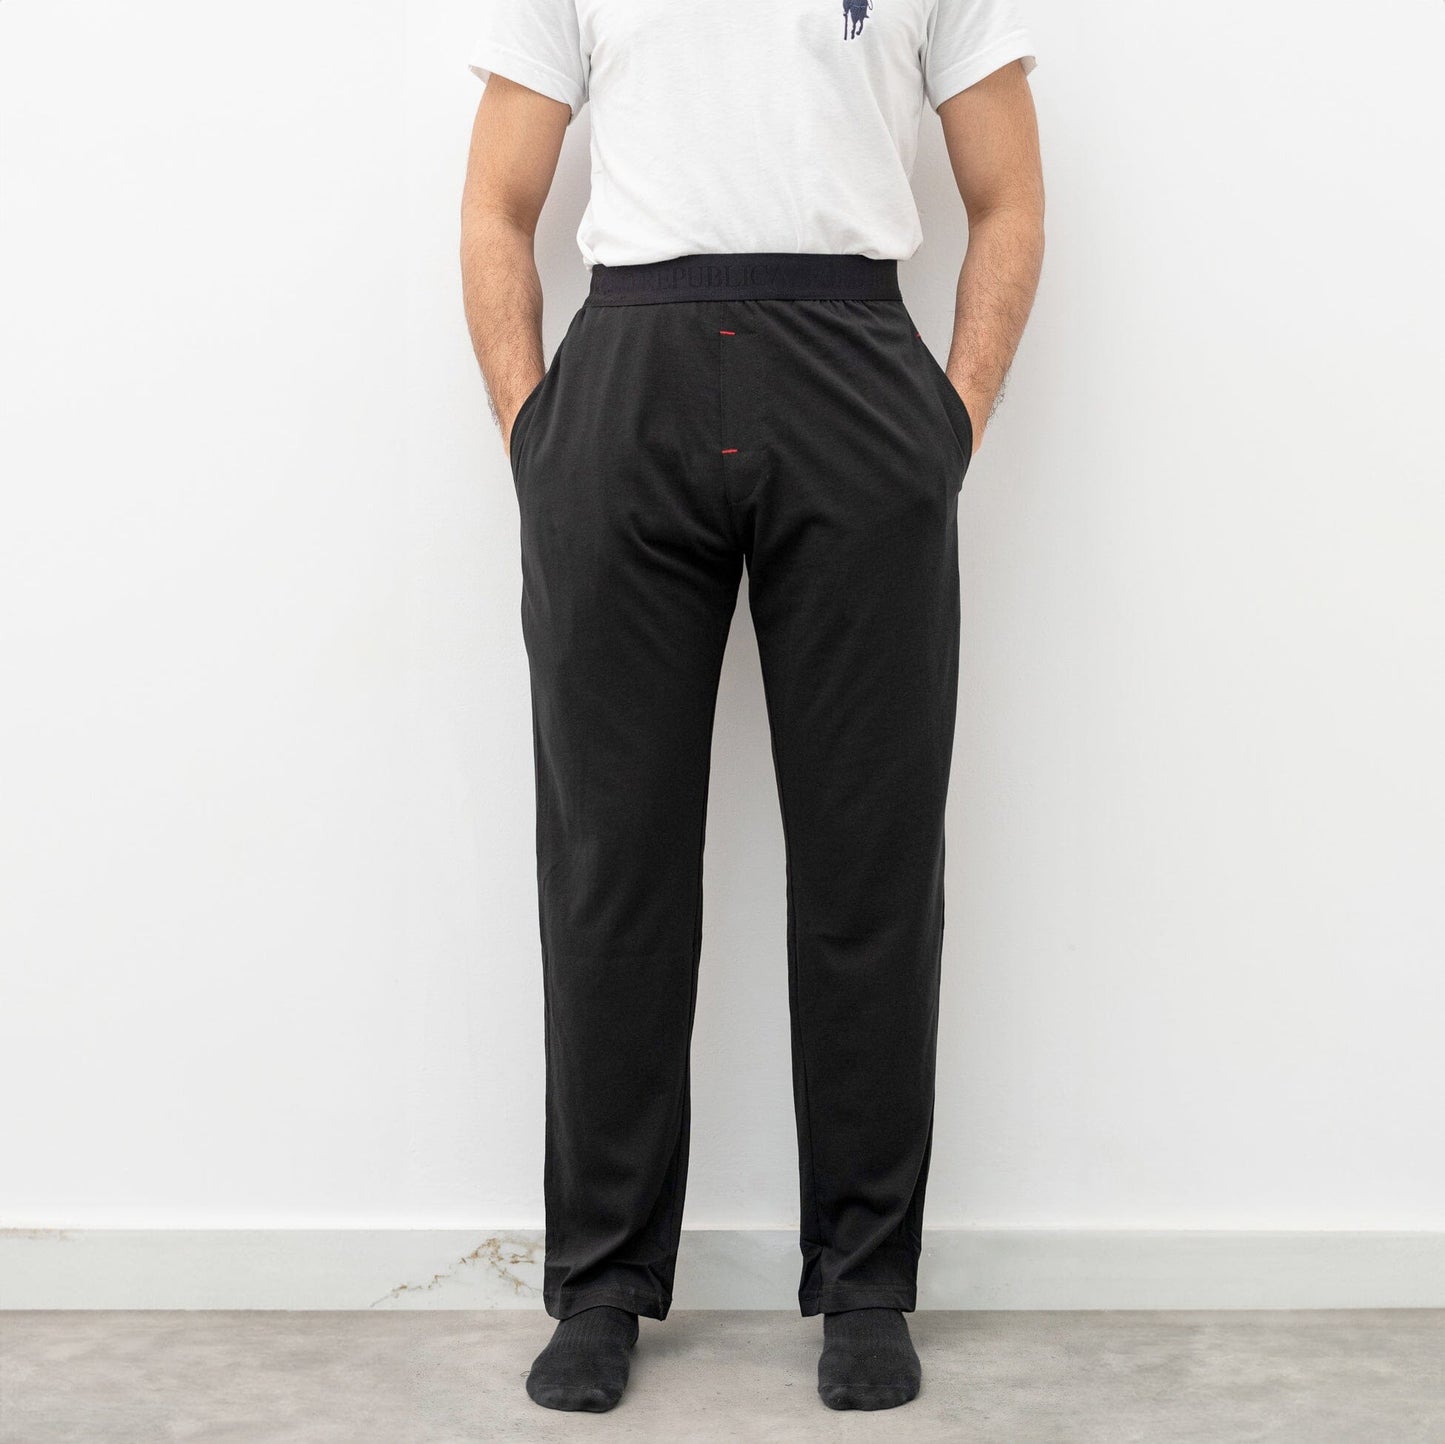 Polo Republica Men's Essentials Jersey Lounge Pants Men's Trousers Polo Republica Black S 